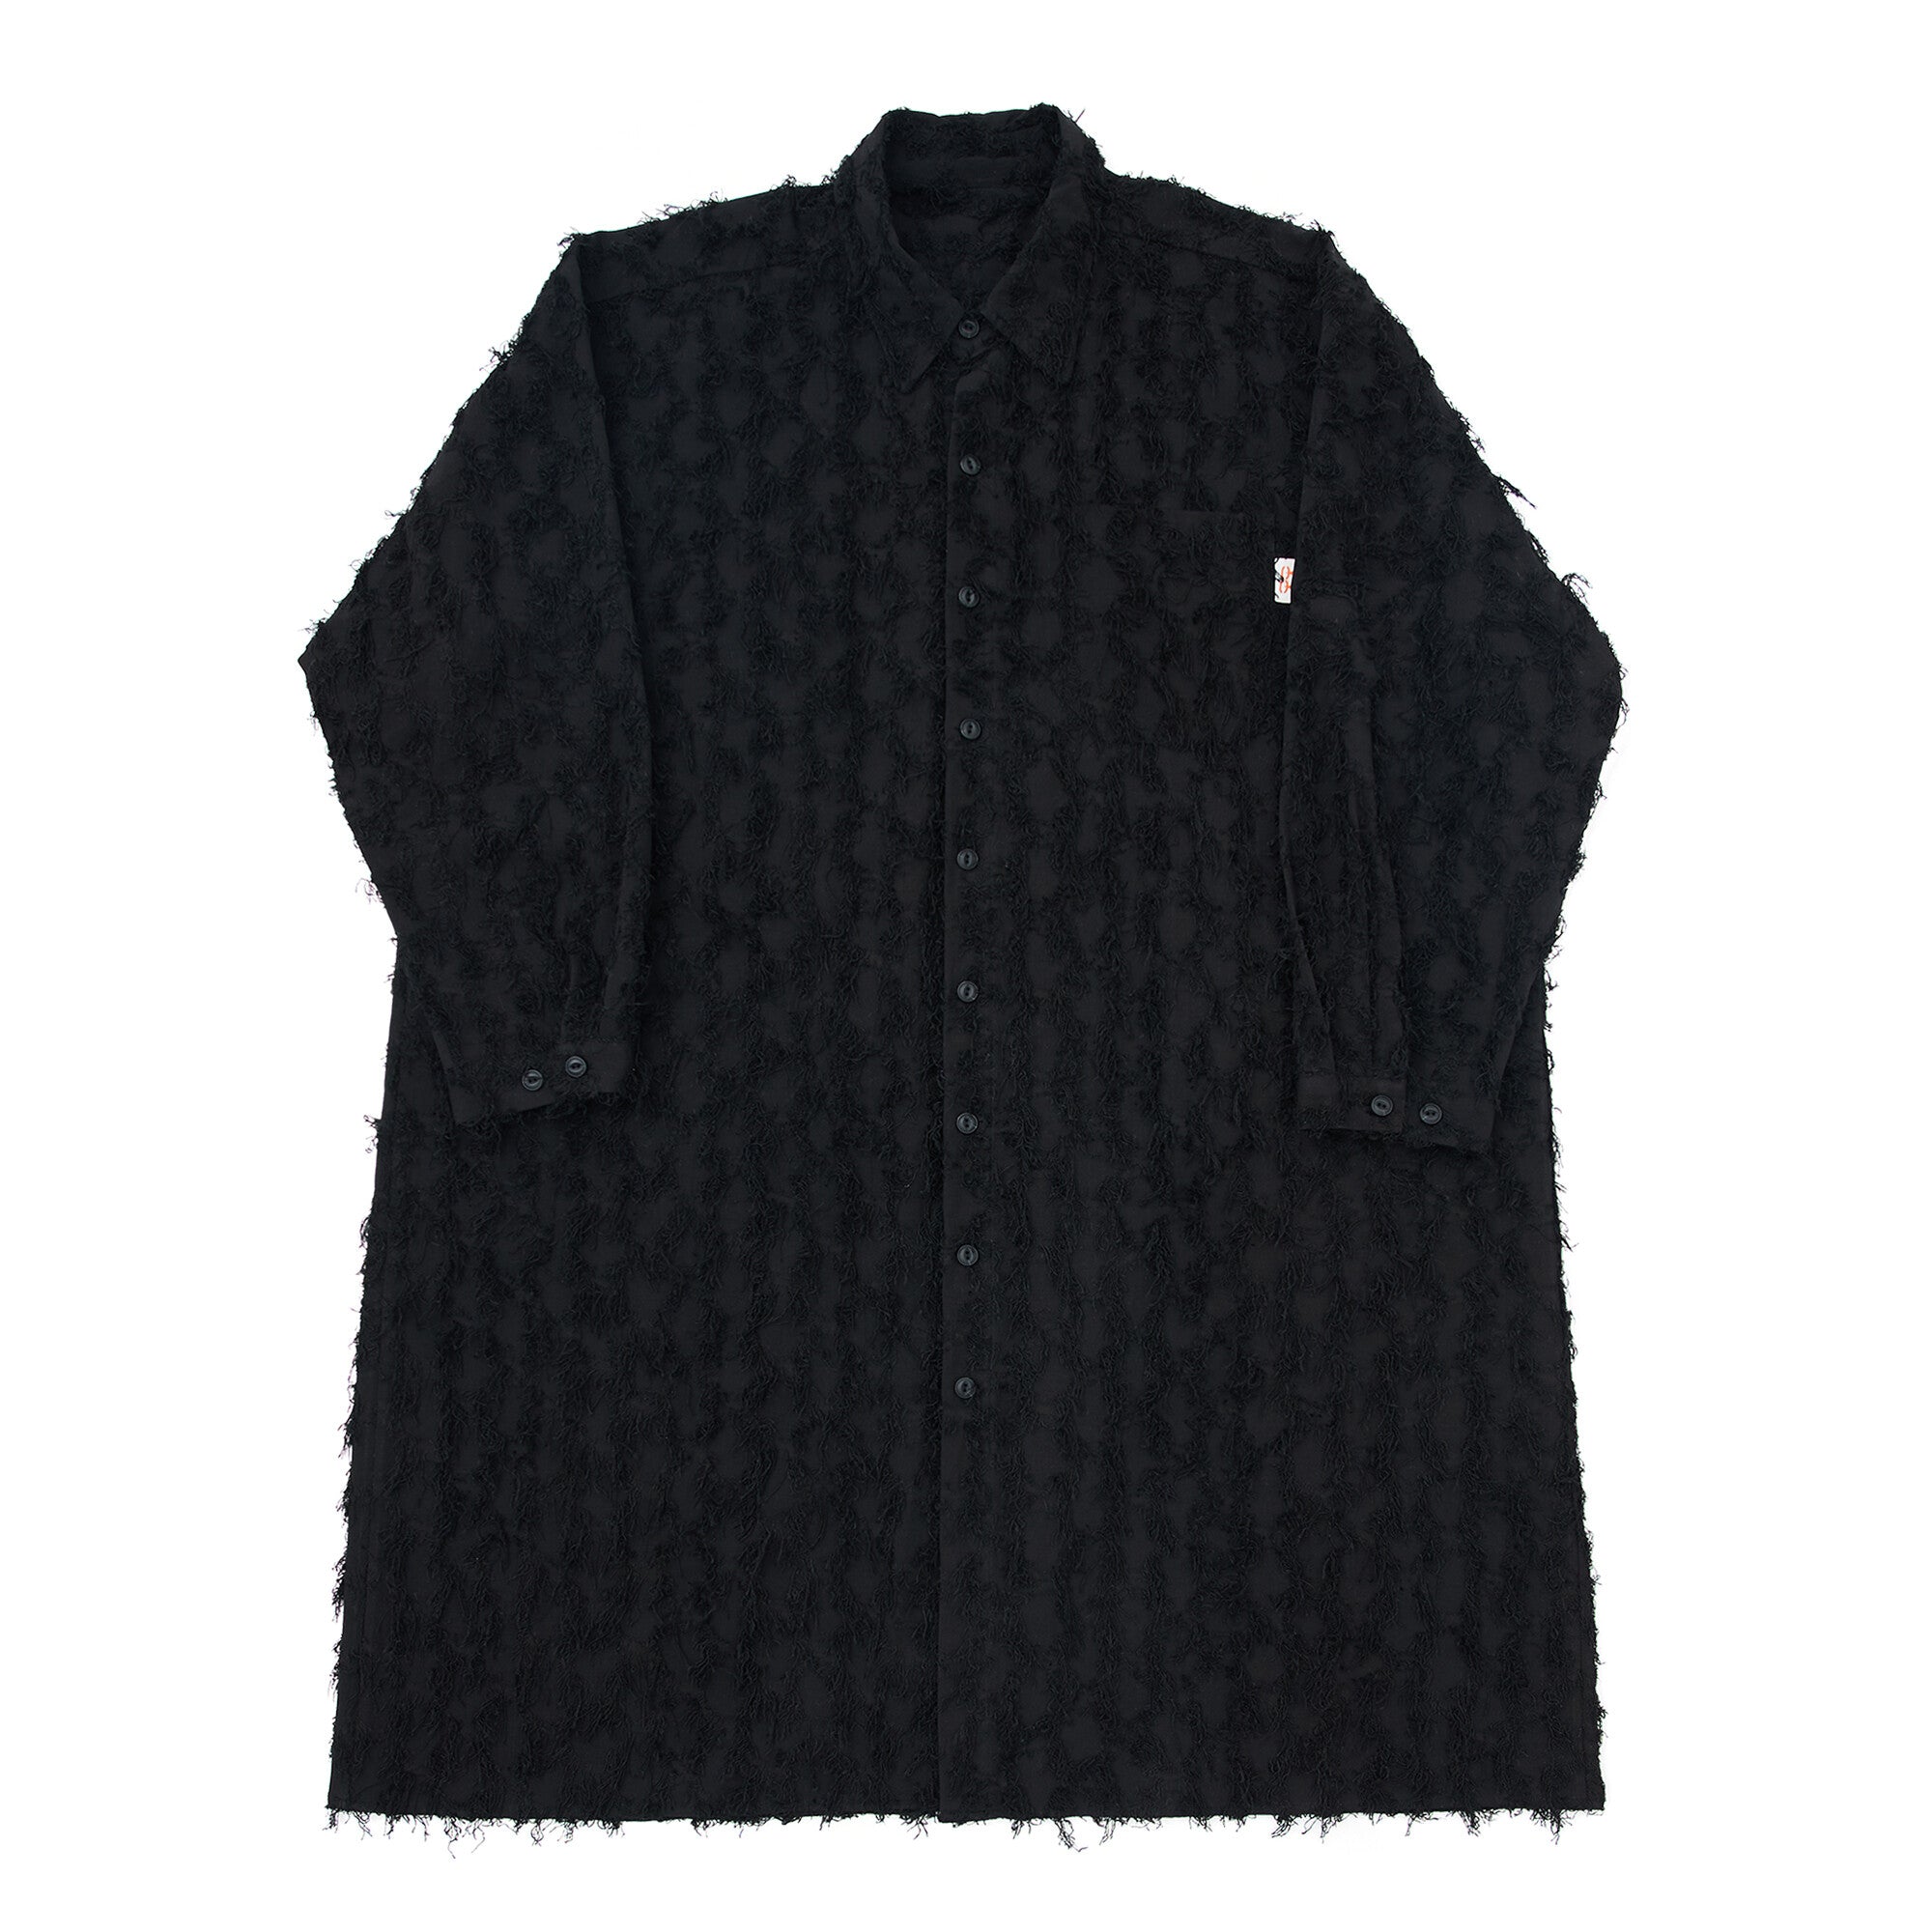 No:G61202_BK | Name:GRUNGE LONG SHIRT DRESS-BK | Color:Black【GORT_ゴート】